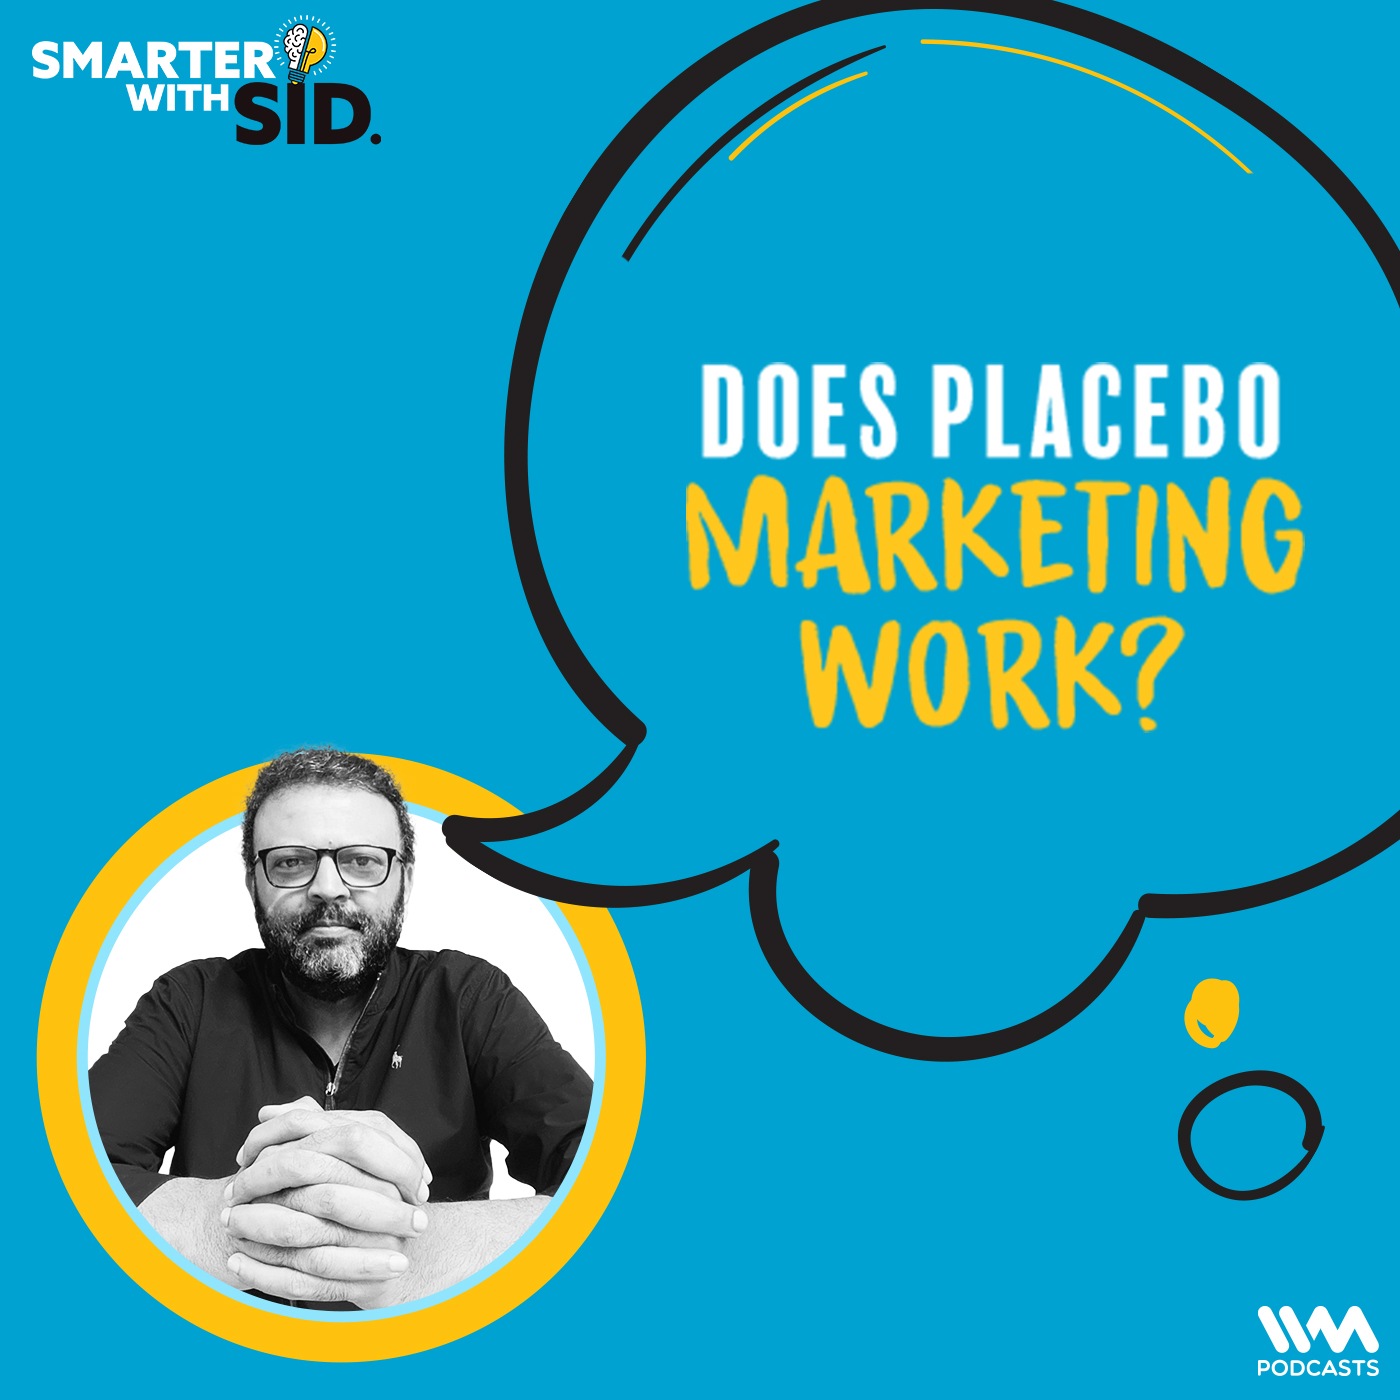 Does Placebo Marketing work?